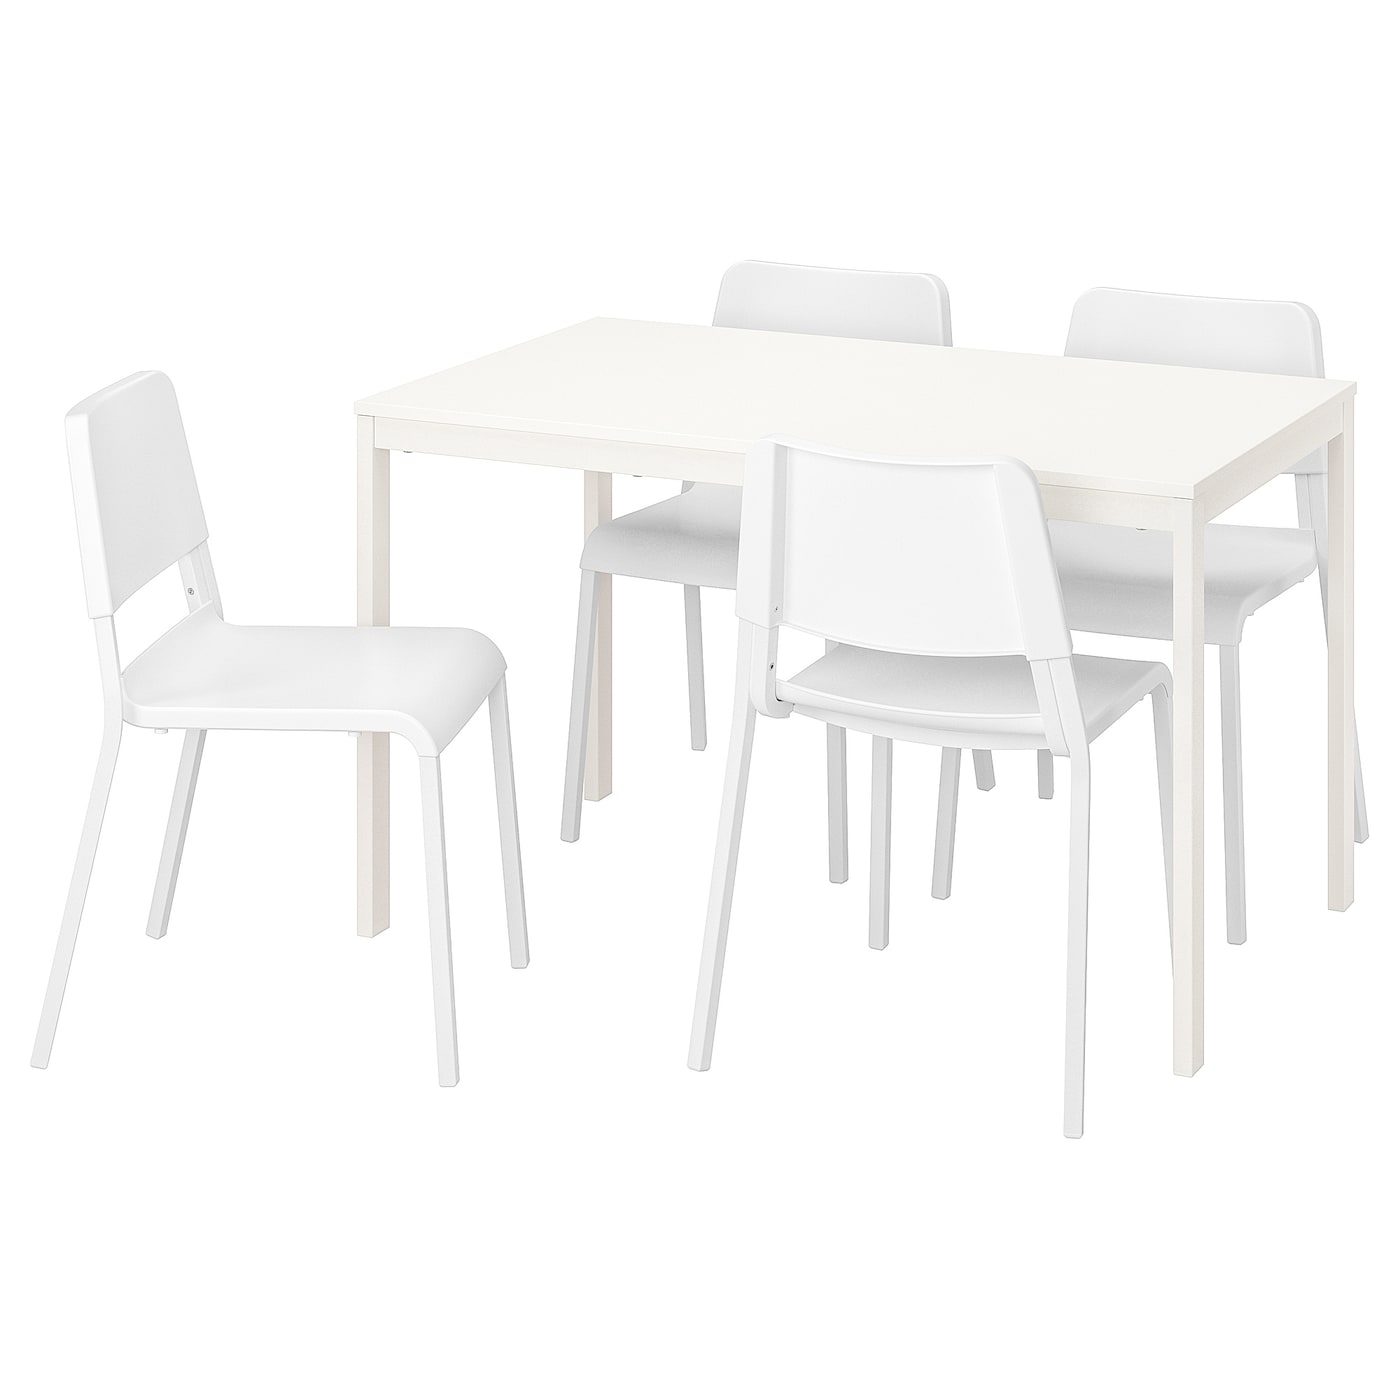 VANGSTA / TEODORES Tisch und 4 Stühle  - Essplatzgruppe - Möbel Ideen für dein Zuhause von Home Trends. Möbel Trends von Social Media Influencer für dein Skandi Zuhause.